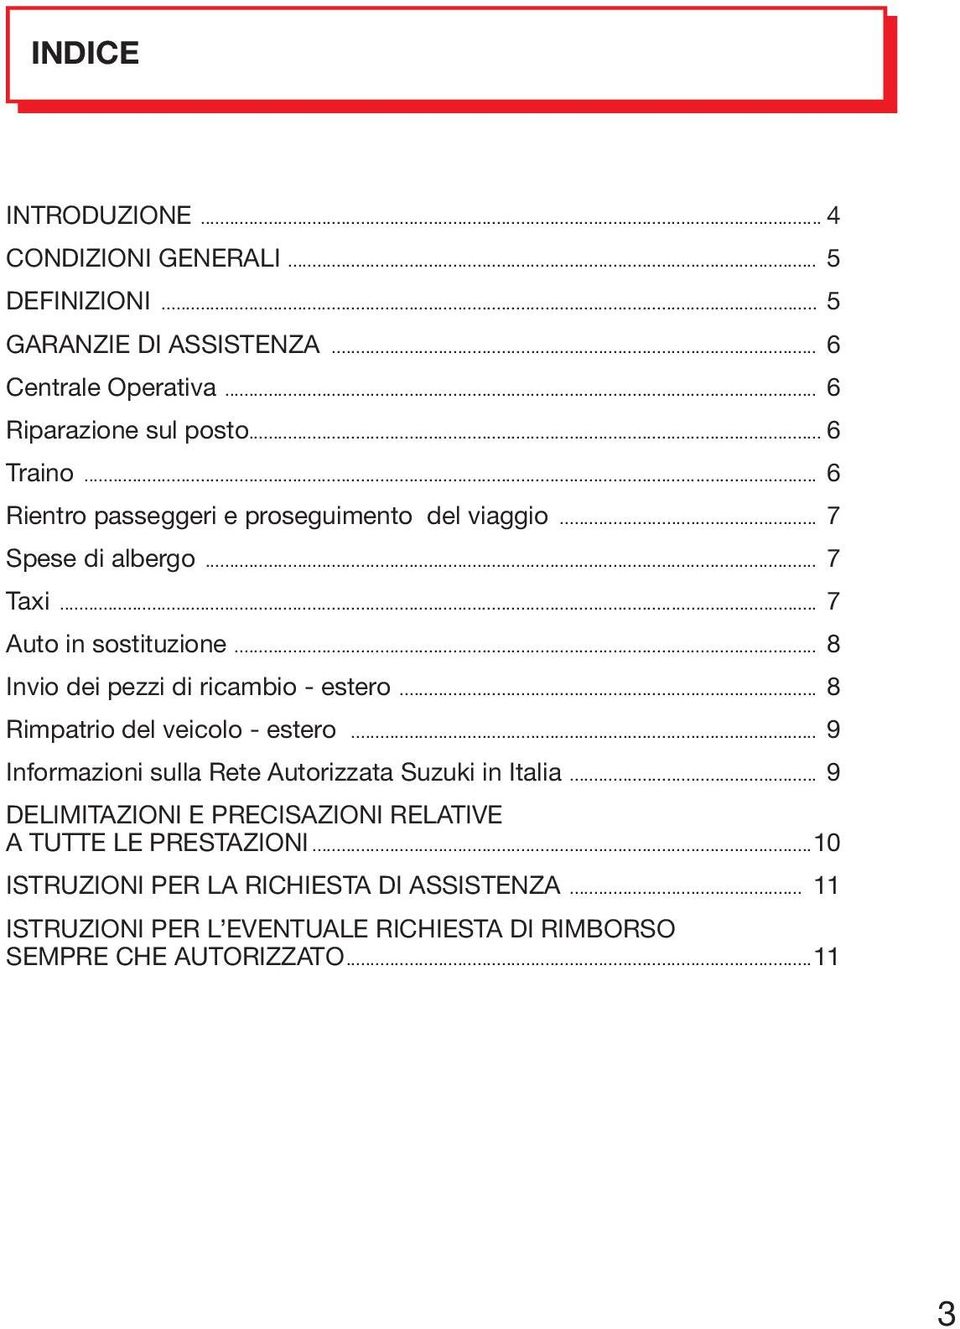 .. 8 Invio dei pezzi di ricambio - estero... 8 Rimpatrio del veicolo - estero... 9 Informazioni sulla Rete Autorizzata Suzuki in Italia.